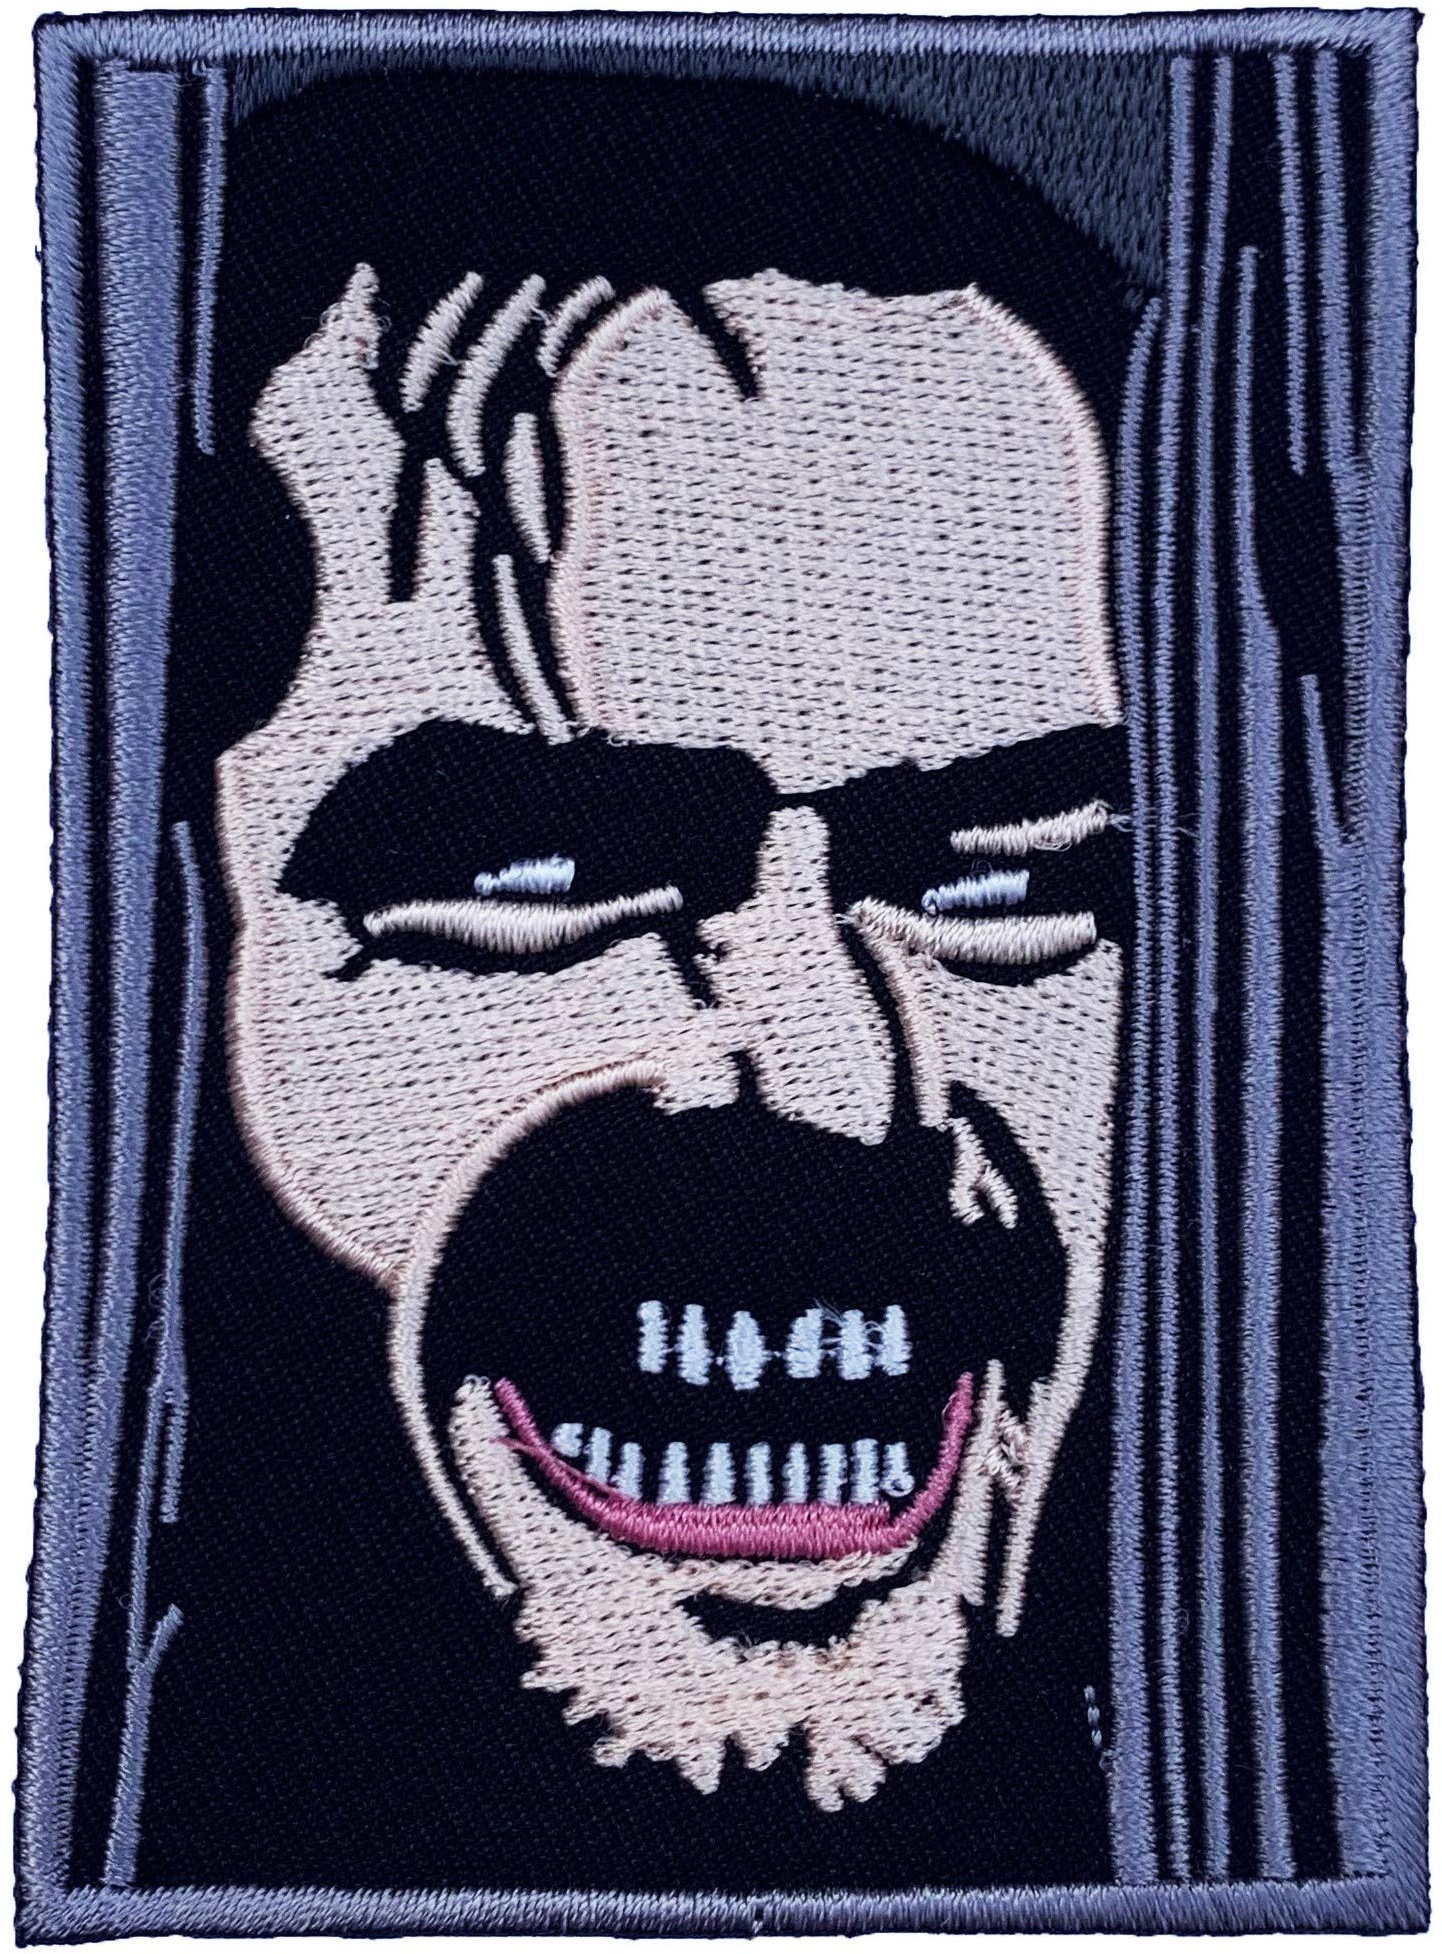 The Shining Patch Bestickt Eisen/Nähen auf Badge DIY Aufnäher Horror Film Souvenir Kostüm Jack Nicholson Here 's Johnny